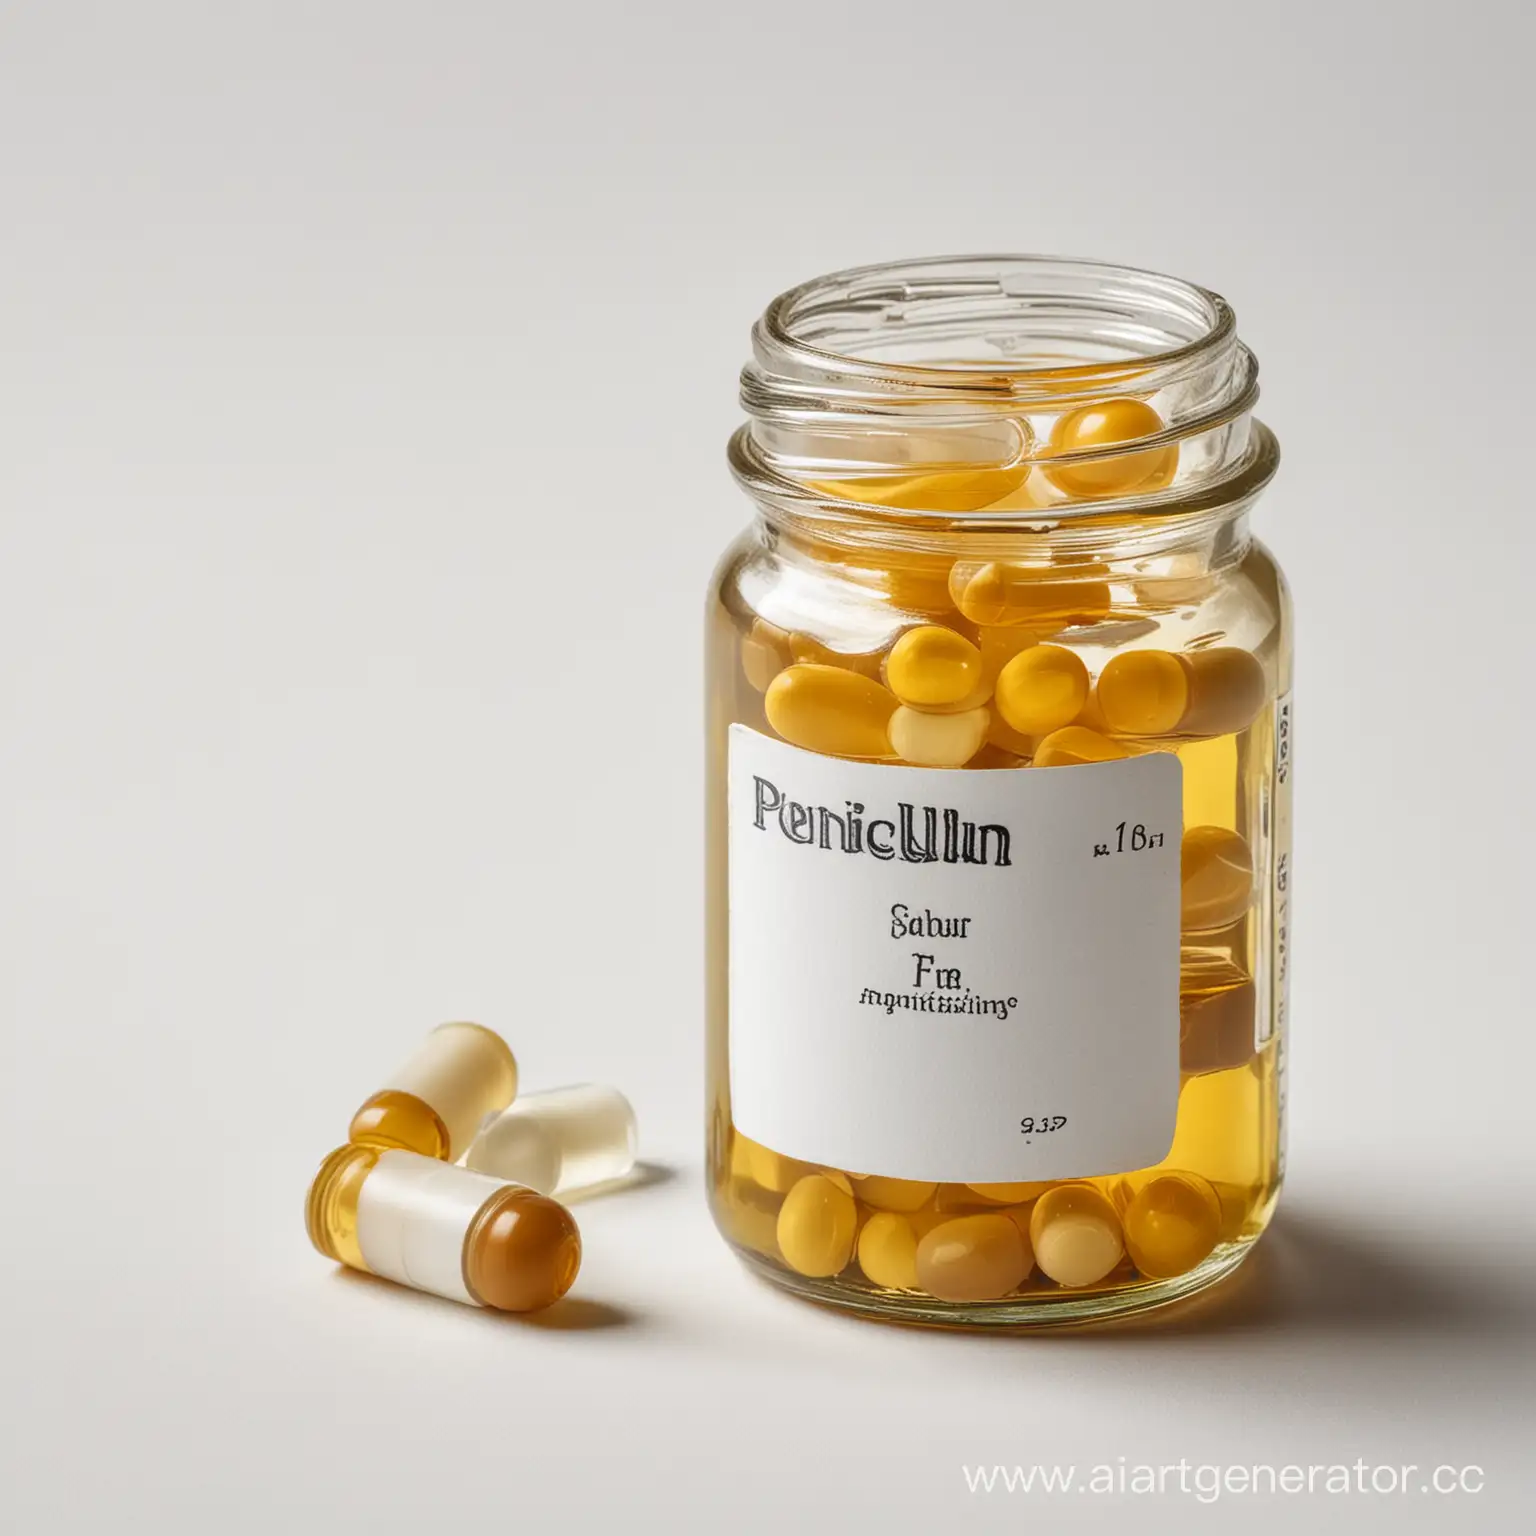 Пенициллин  лекарство в банке на белом фоне